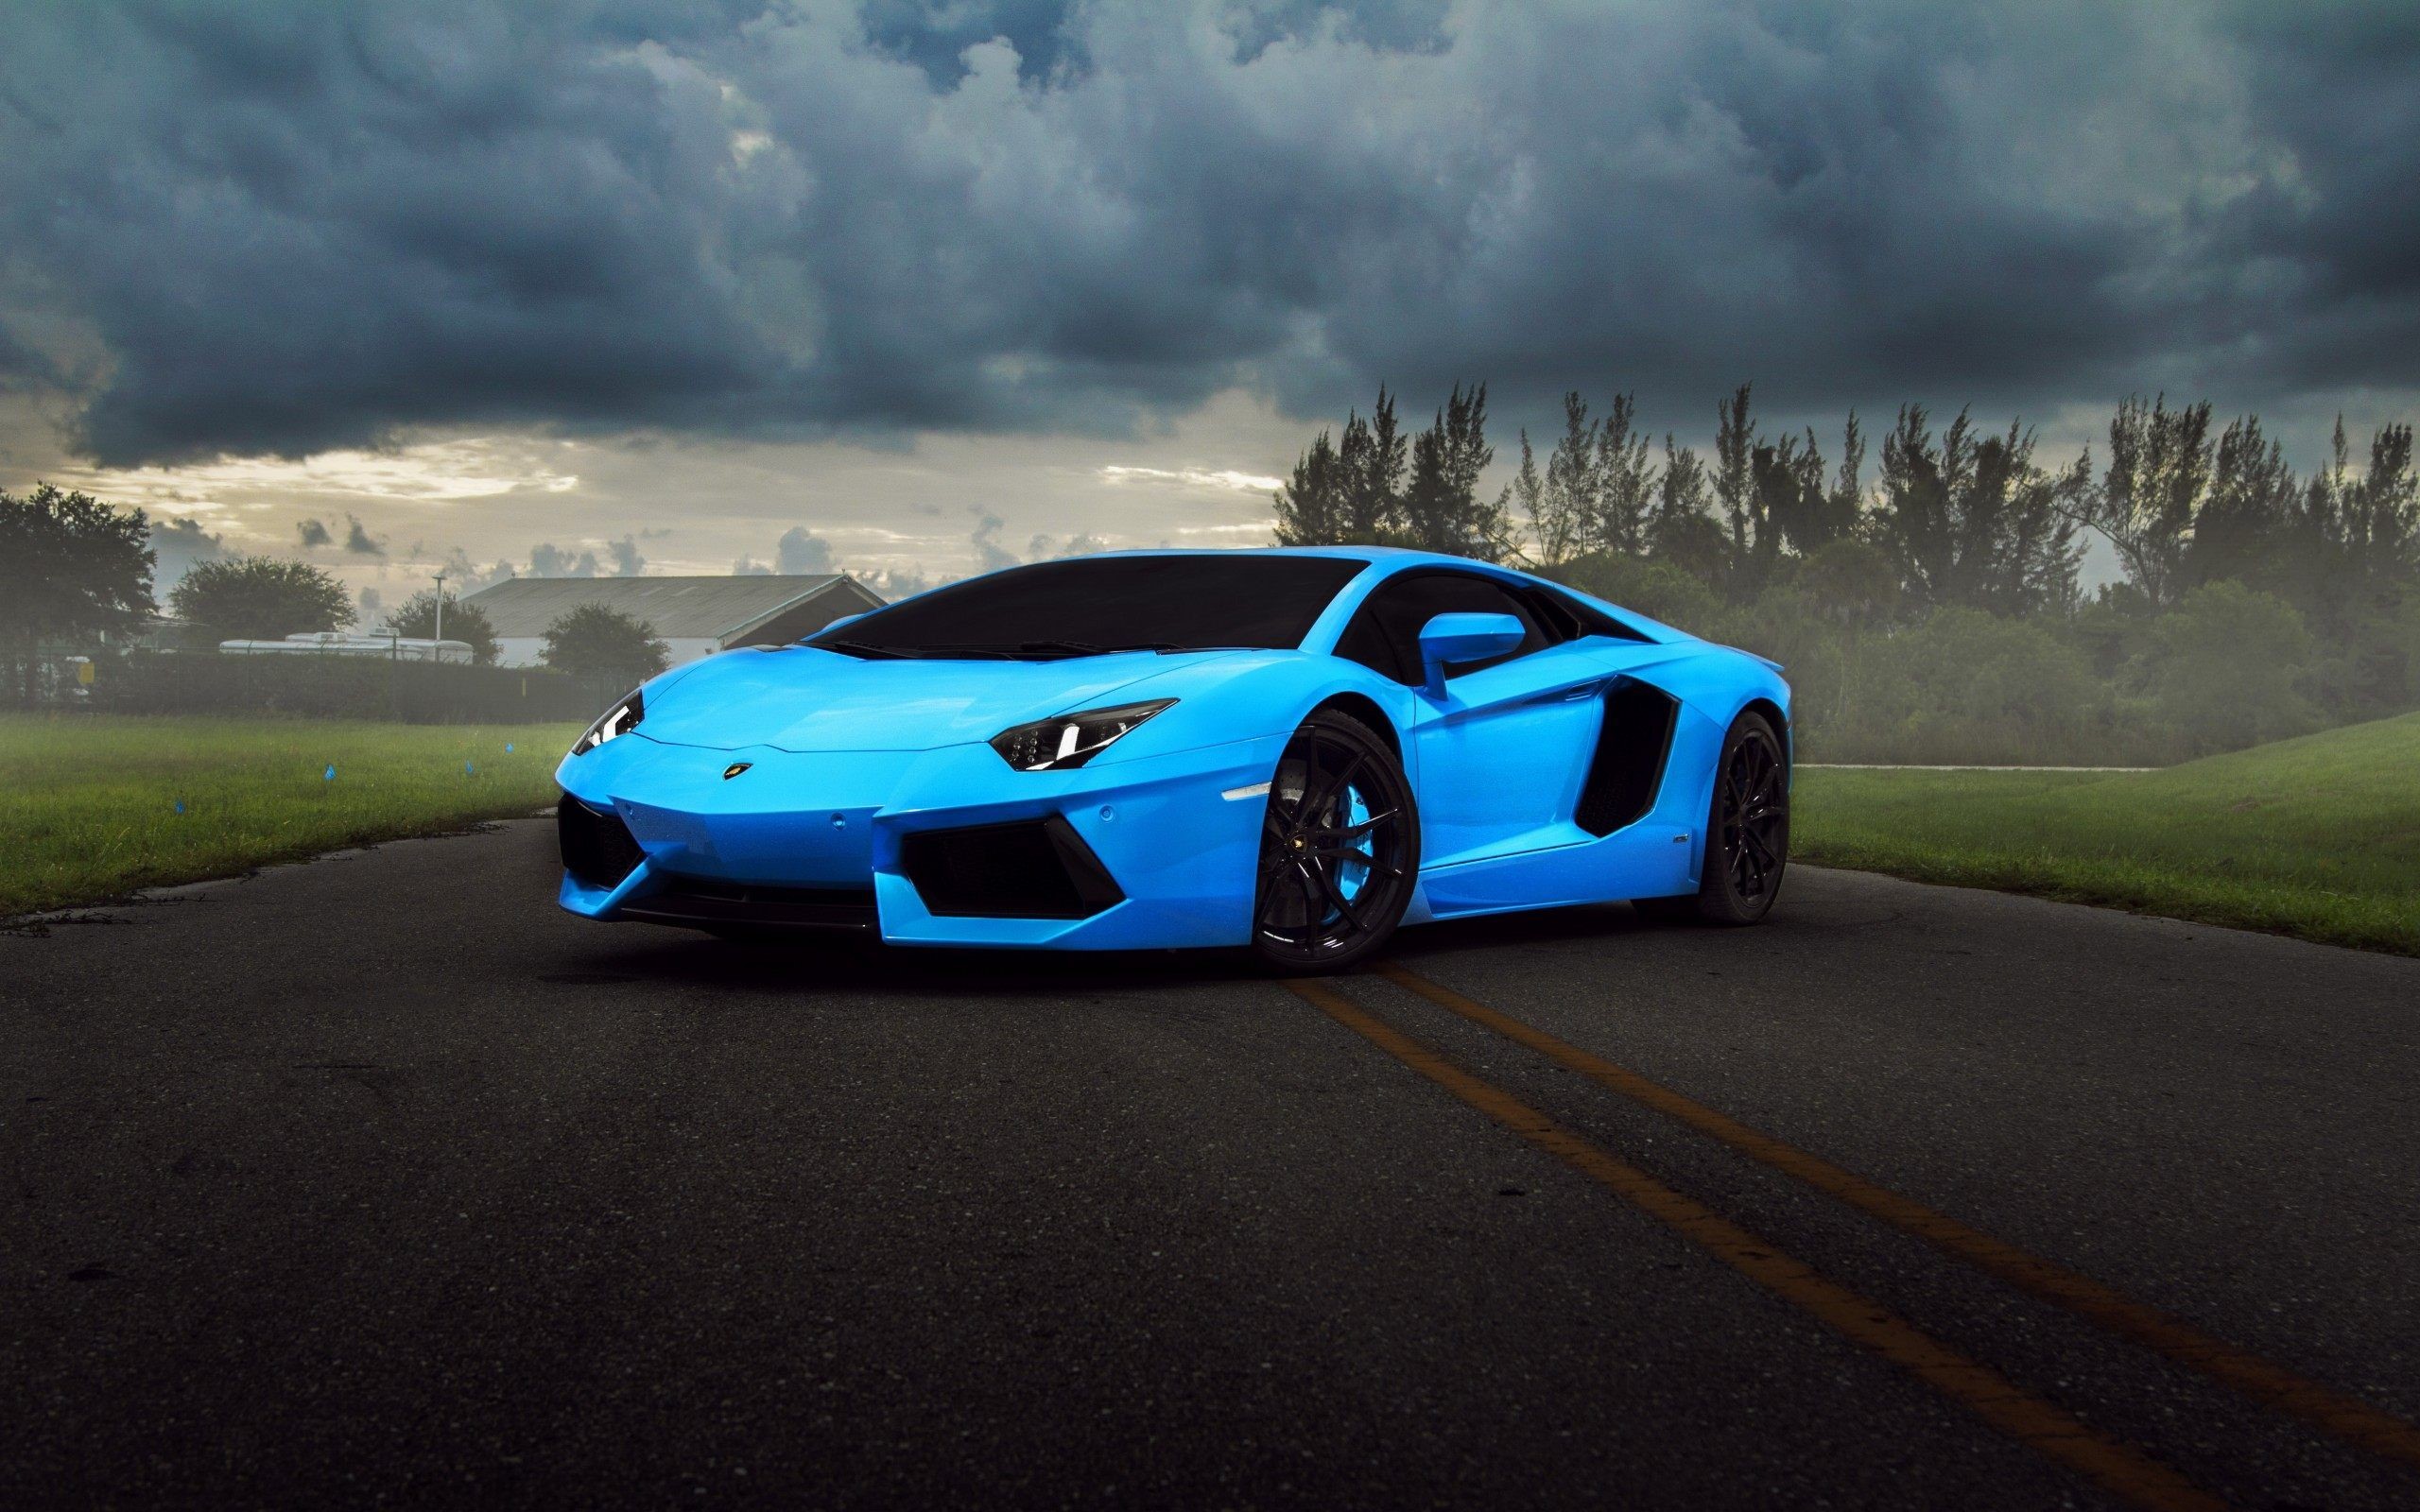 2560x1600 Blue Lamborghini Wallpapers Free